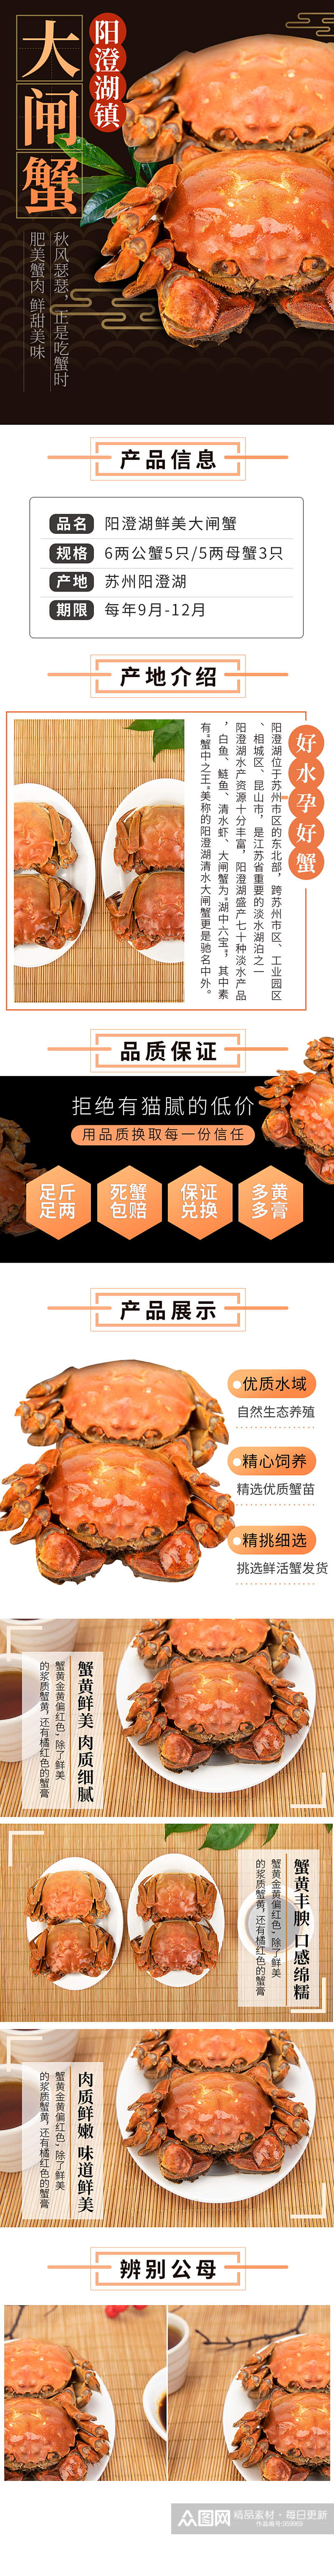 电商海鲜螃蟹详情页素材